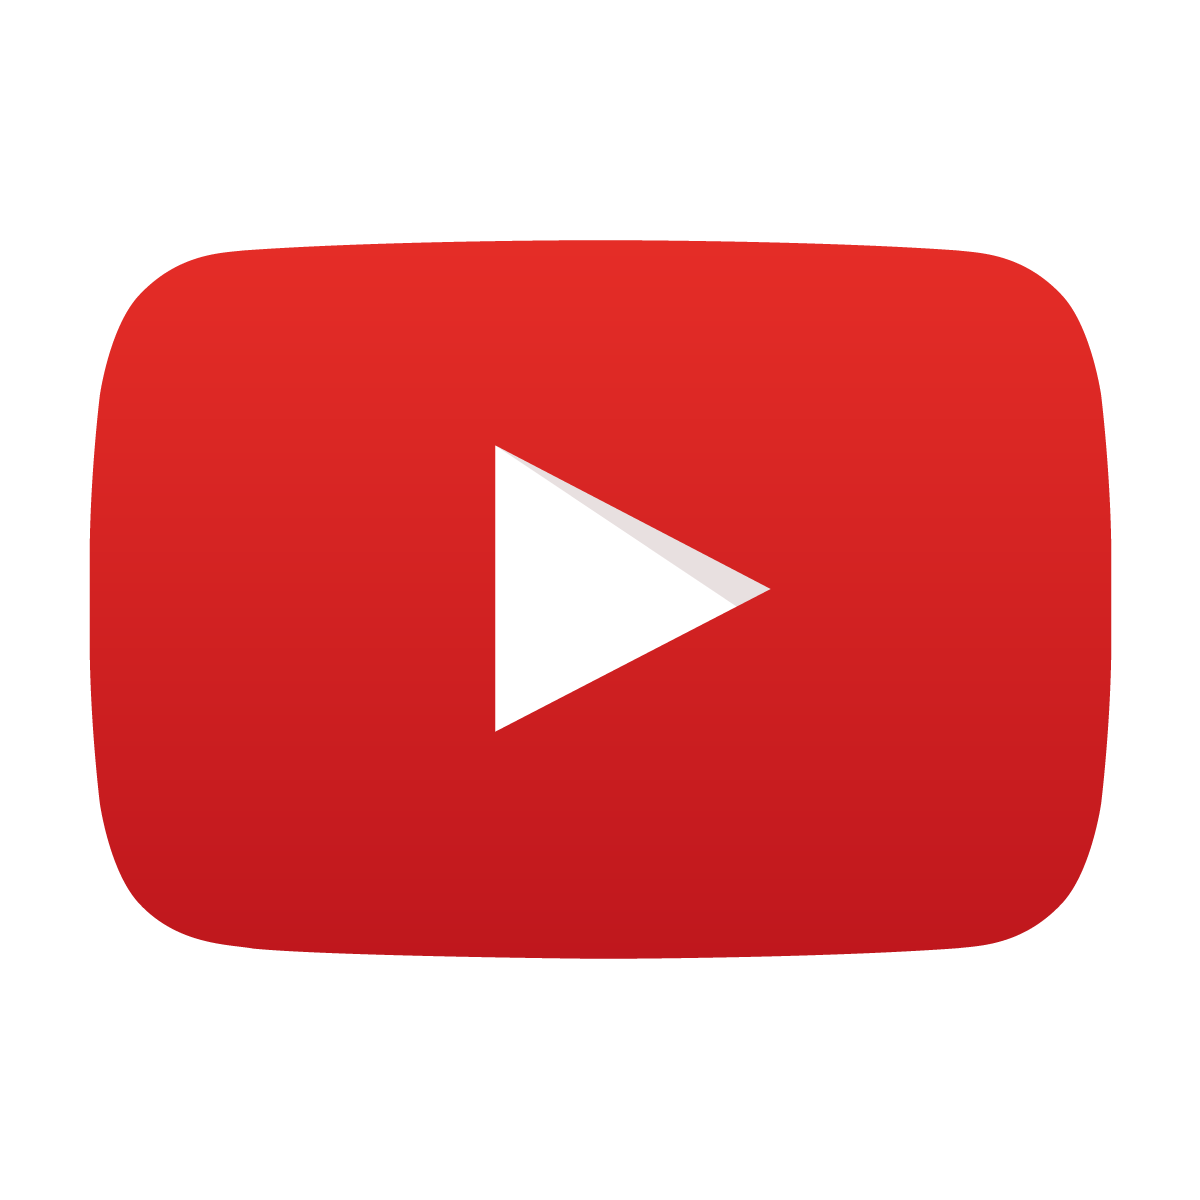 Bạn yêu thích chất lượng cao và muốn tìm biểu tượng logo Youtube với chất lượng ảnh tốt nhất? Nhấn vào hình ảnh để tải ngay biểu tượng Youtube PNG HD để sử dụng trên các thiết bị khác nhau.